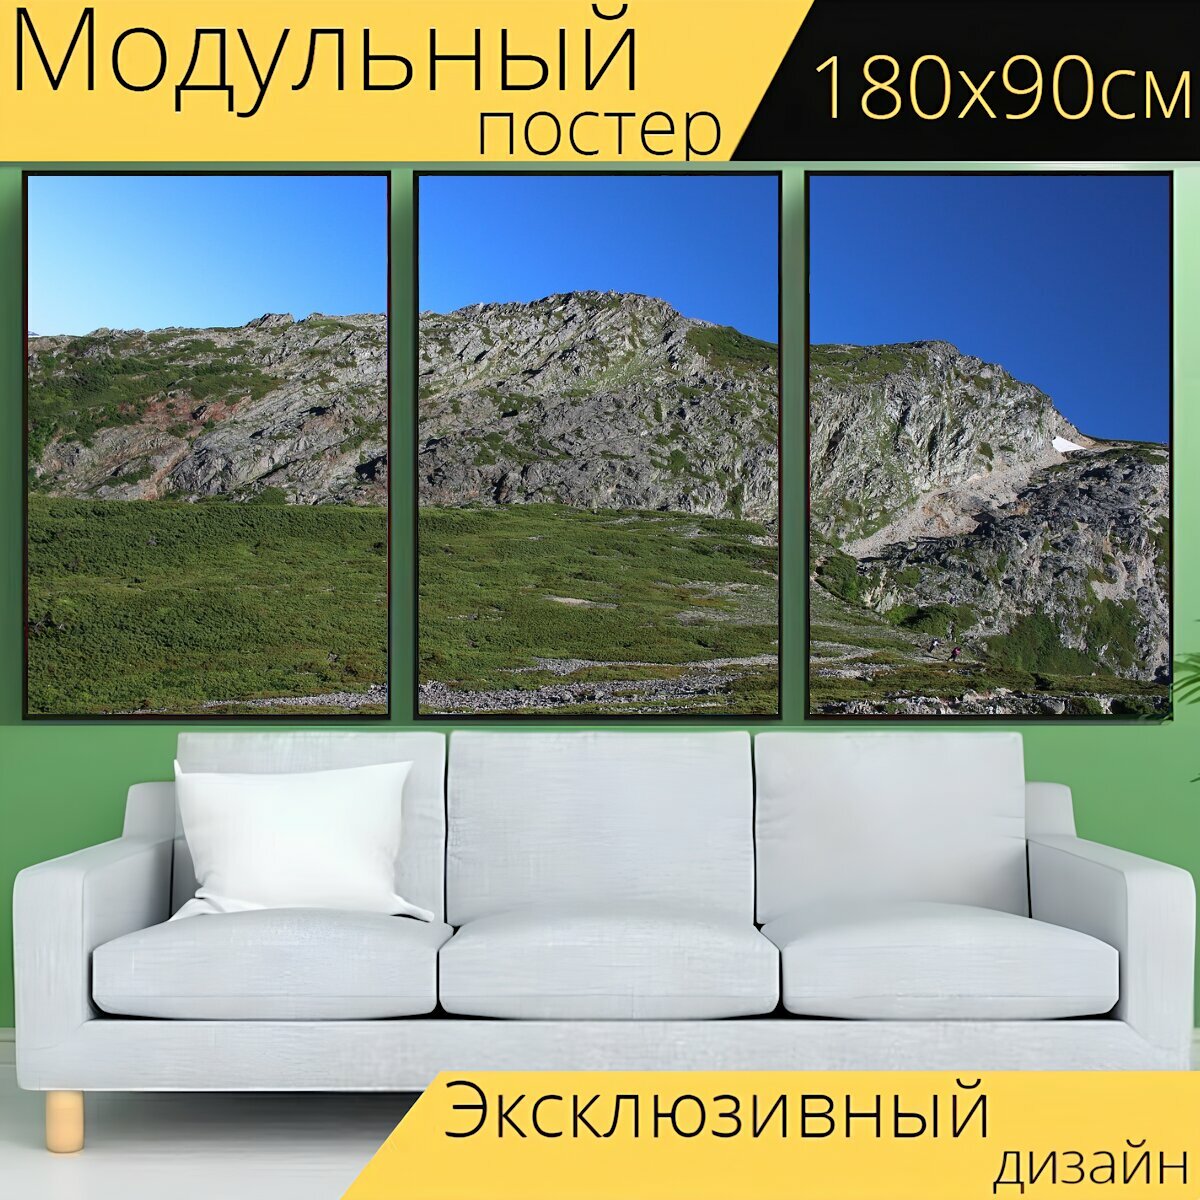 Модульный постер "Снежная гора, альпинизм, япония" 180 x 90 см. для интерьера